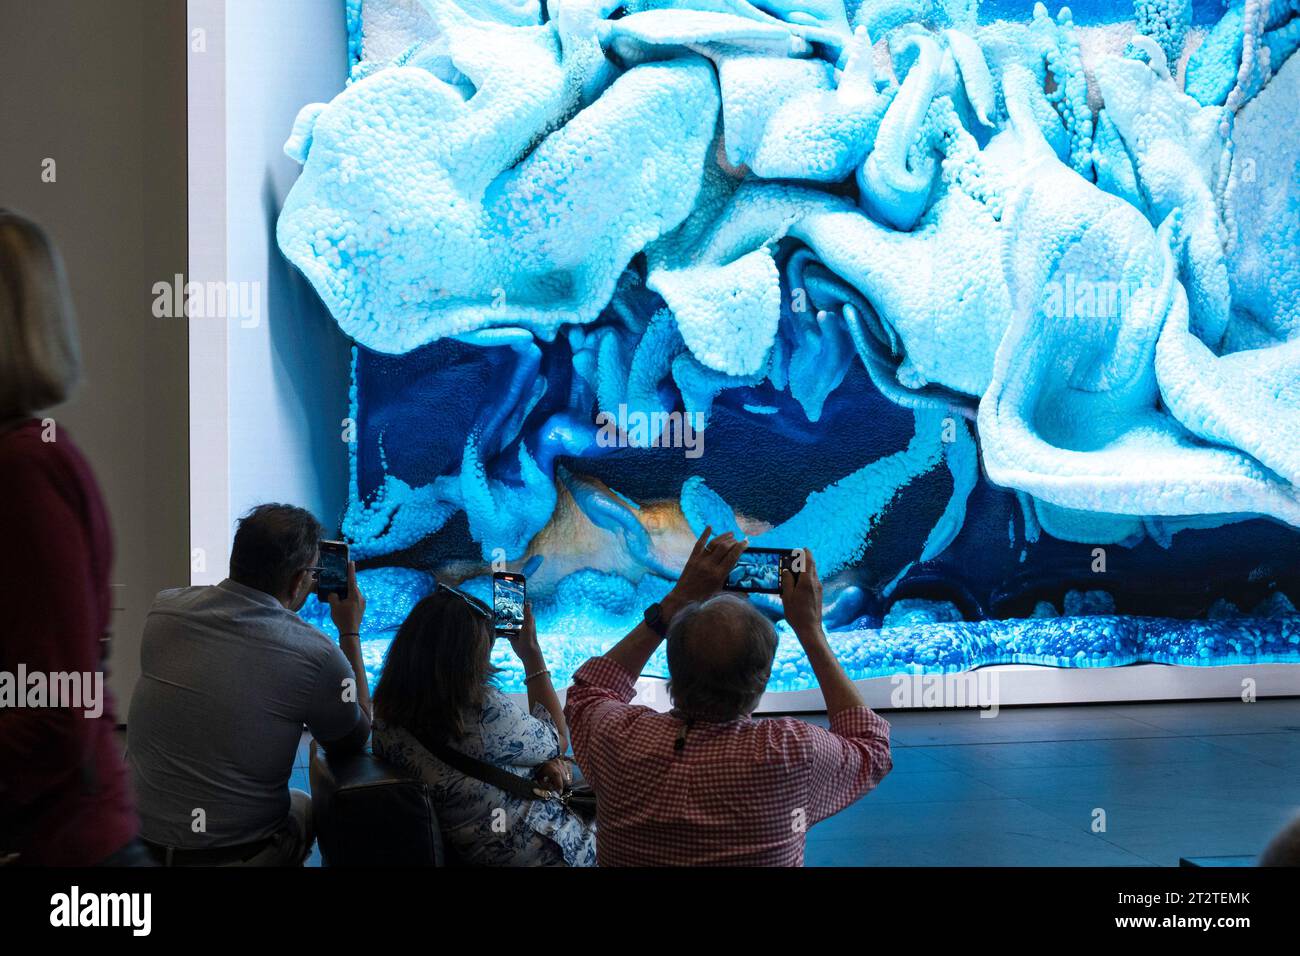 L'œuvre d'art numérique de Refik Anadol, « sans surveillance », est une installation multimédia d'intelligence artificielle ajouter le Musée d'art moderne, 2023, NYC, Etats-Unis Banque D'Images